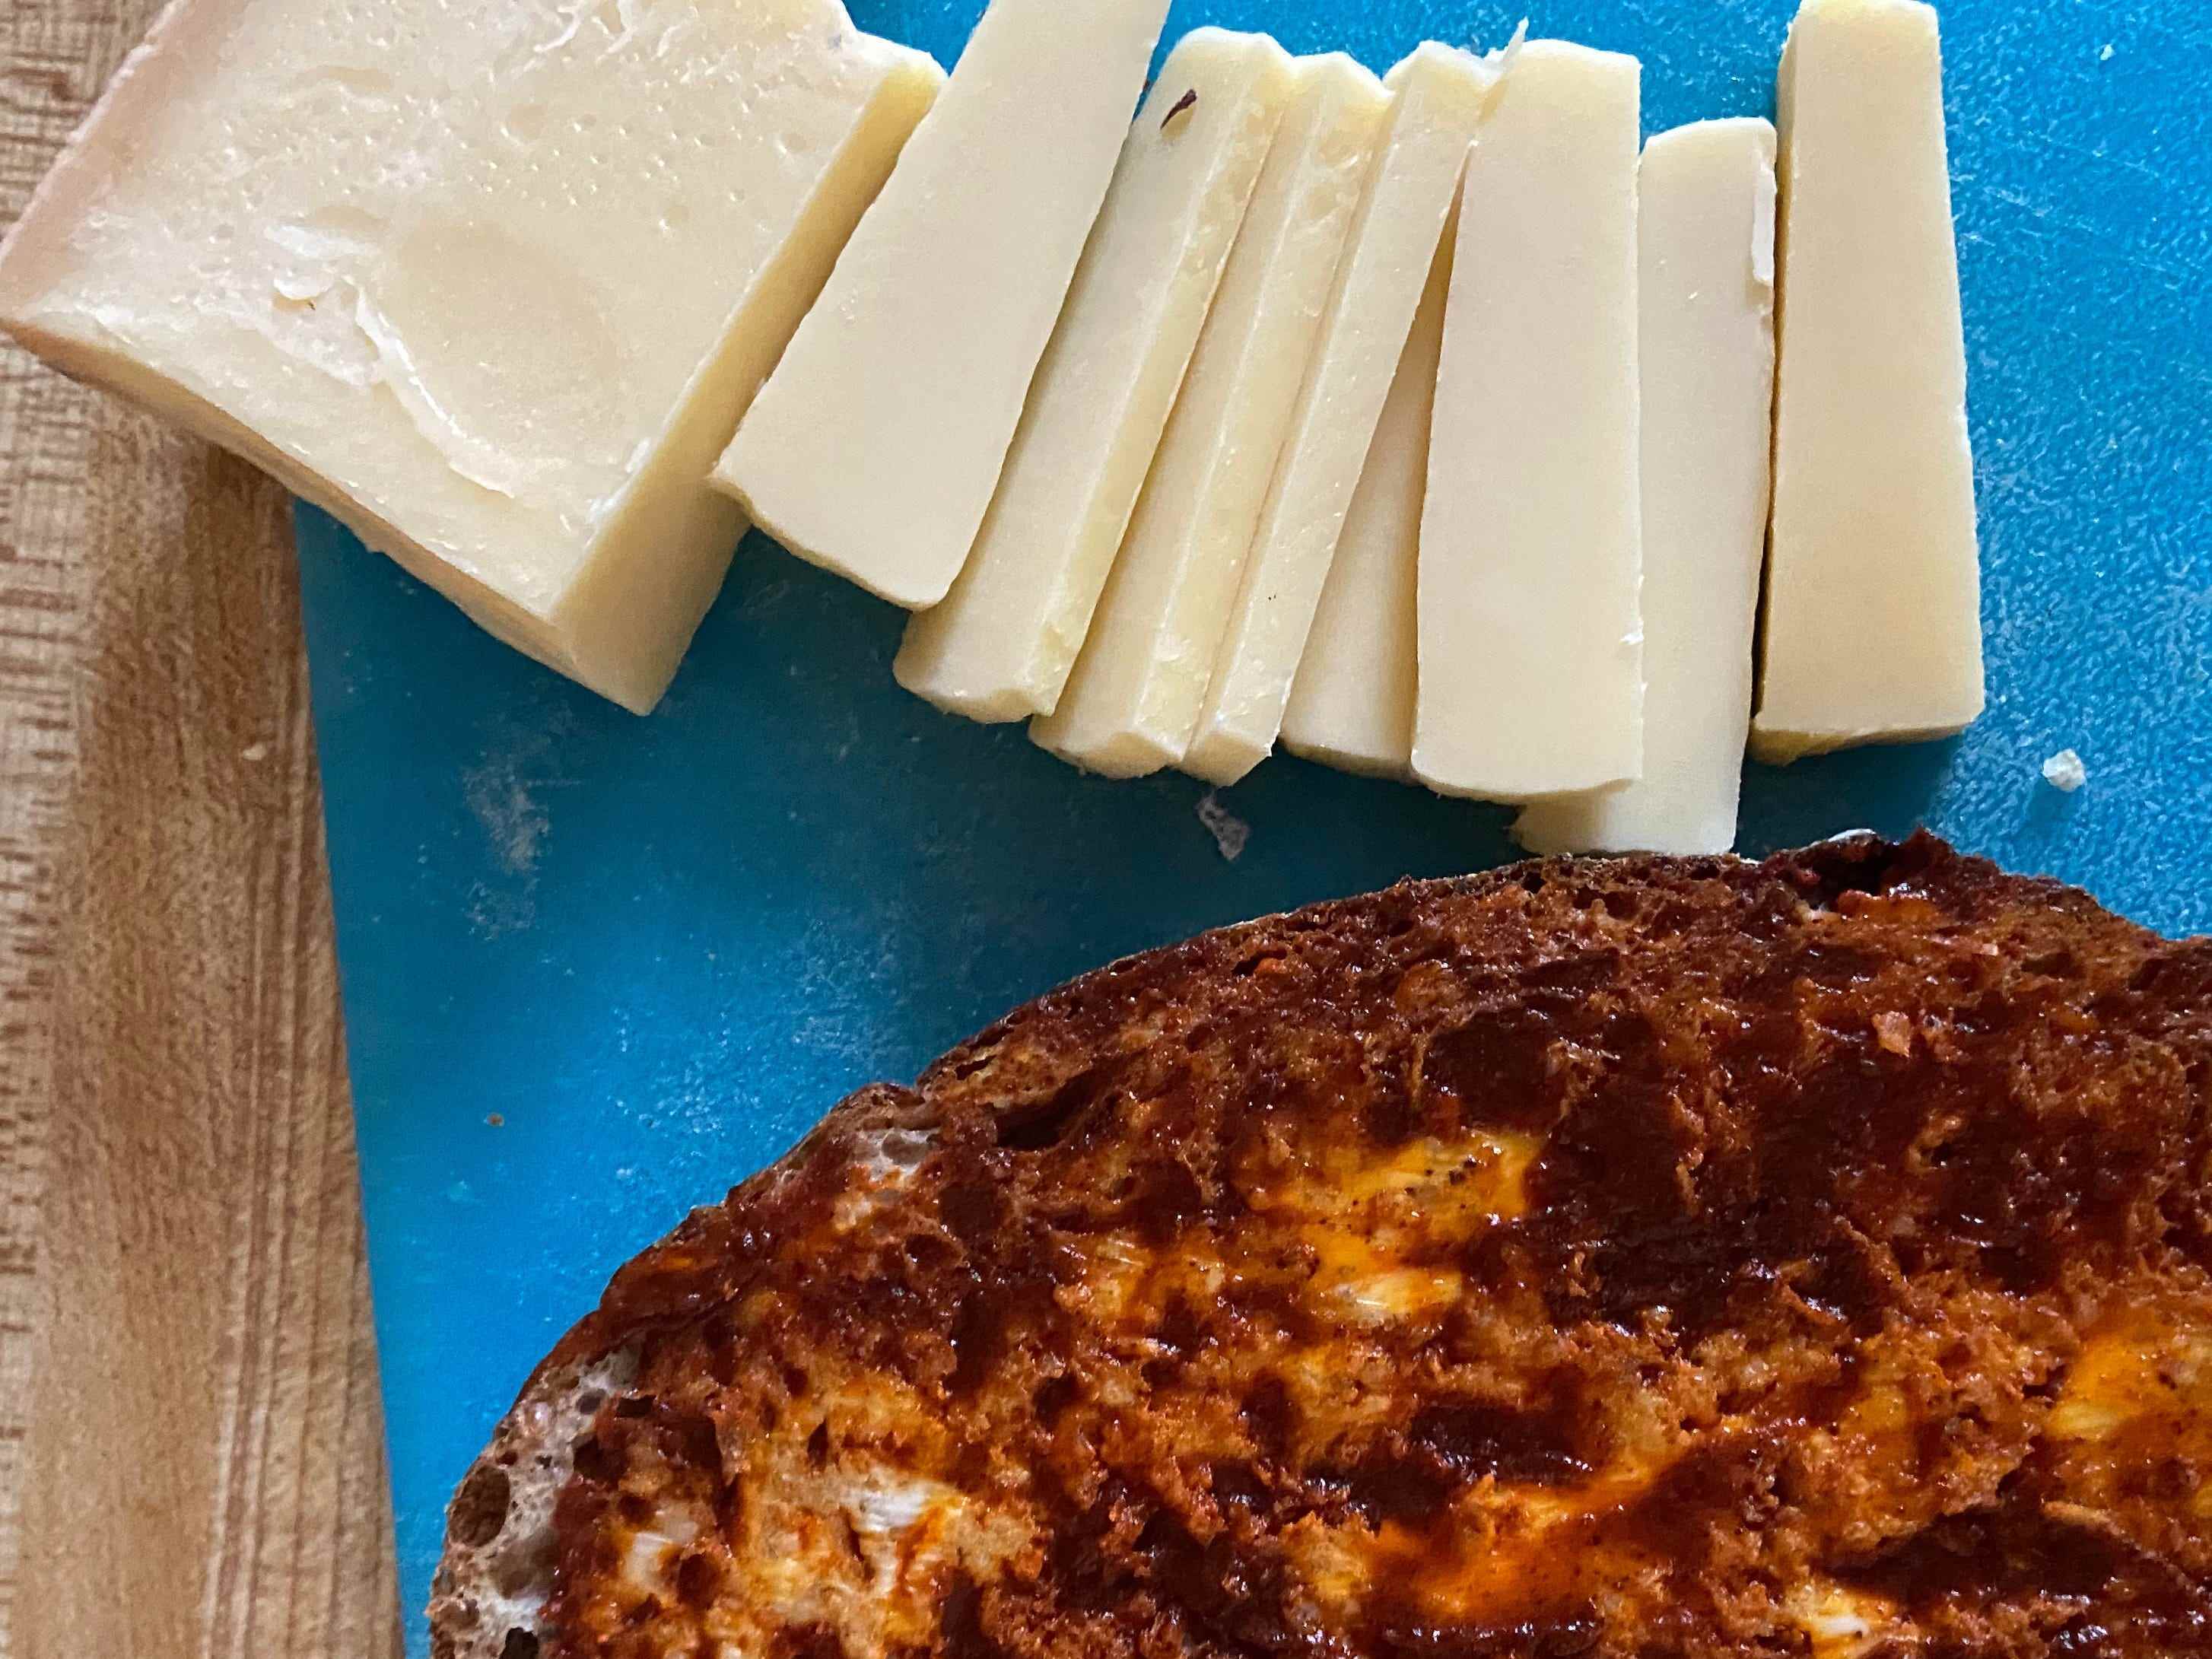 Comté-Käse über einer gerösteten Scheibe Sauerteigbrot